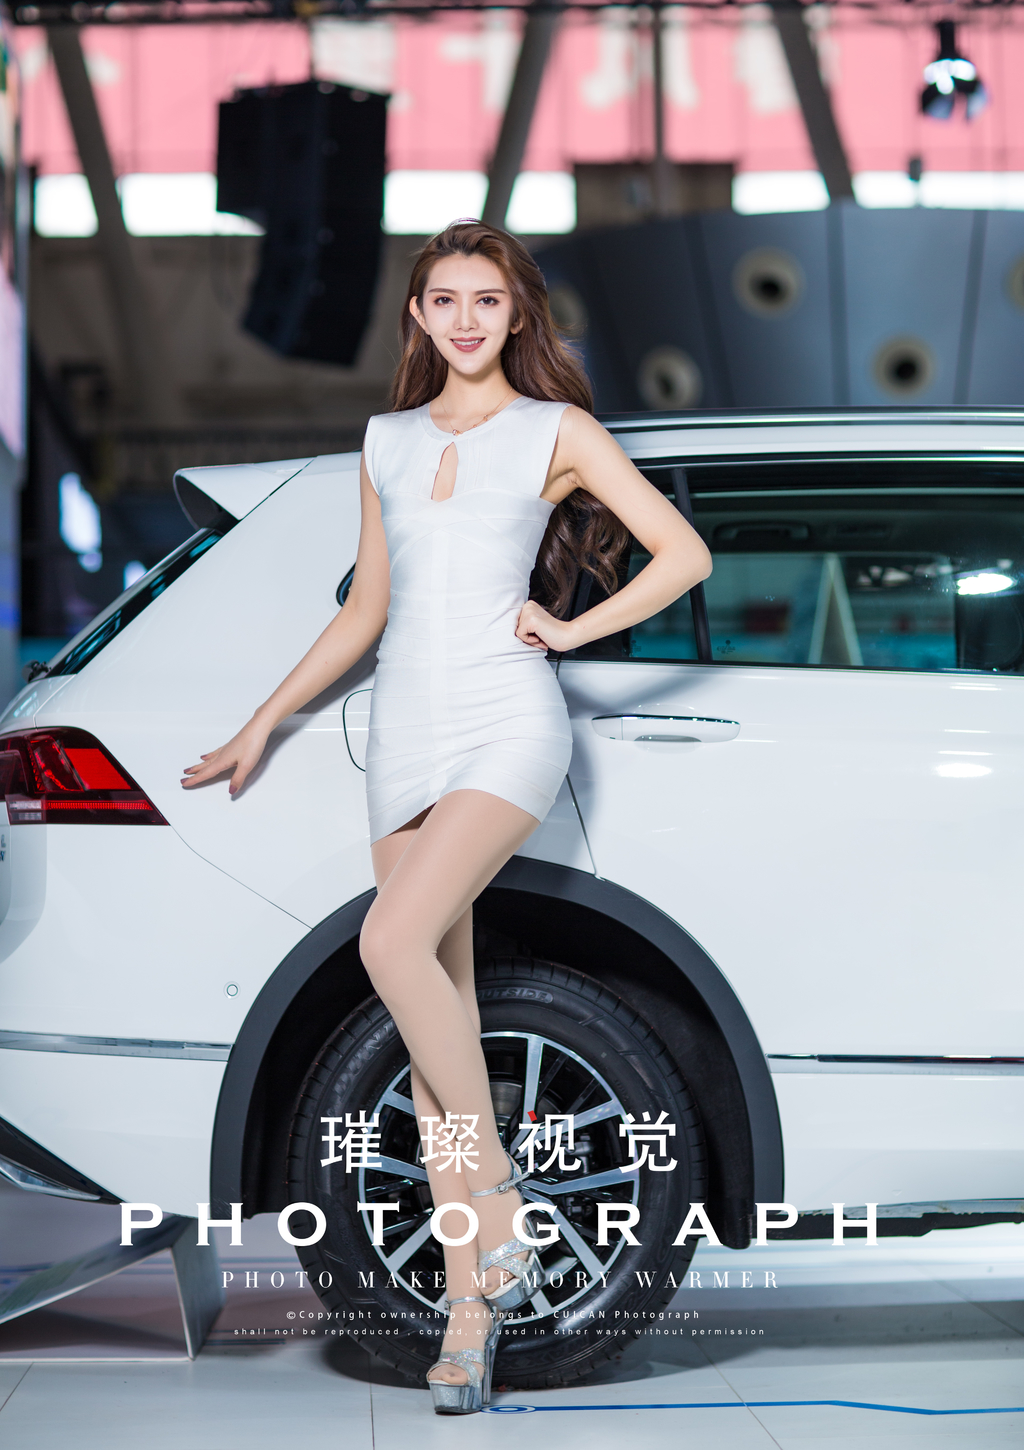 哈尔滨美女车模s型身材前凸后翘迷人笑容车展写真  第1张